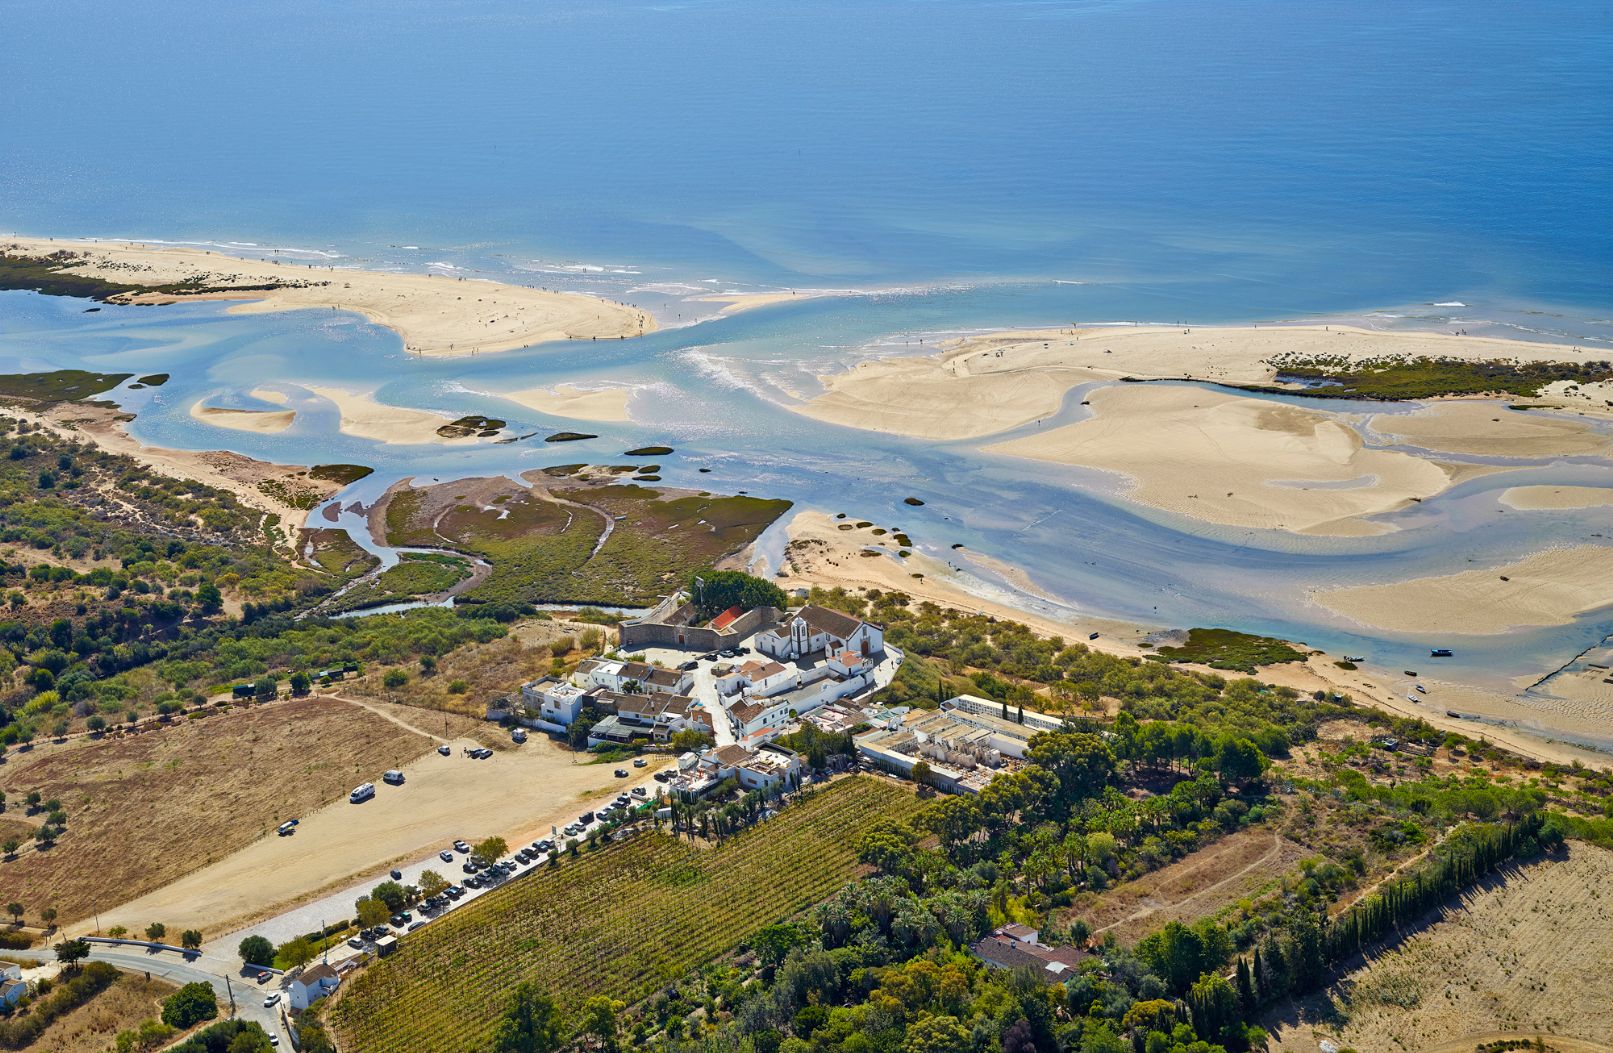 Projecto "Região Inteligente Algarve" decorre até Dezembro de 2022